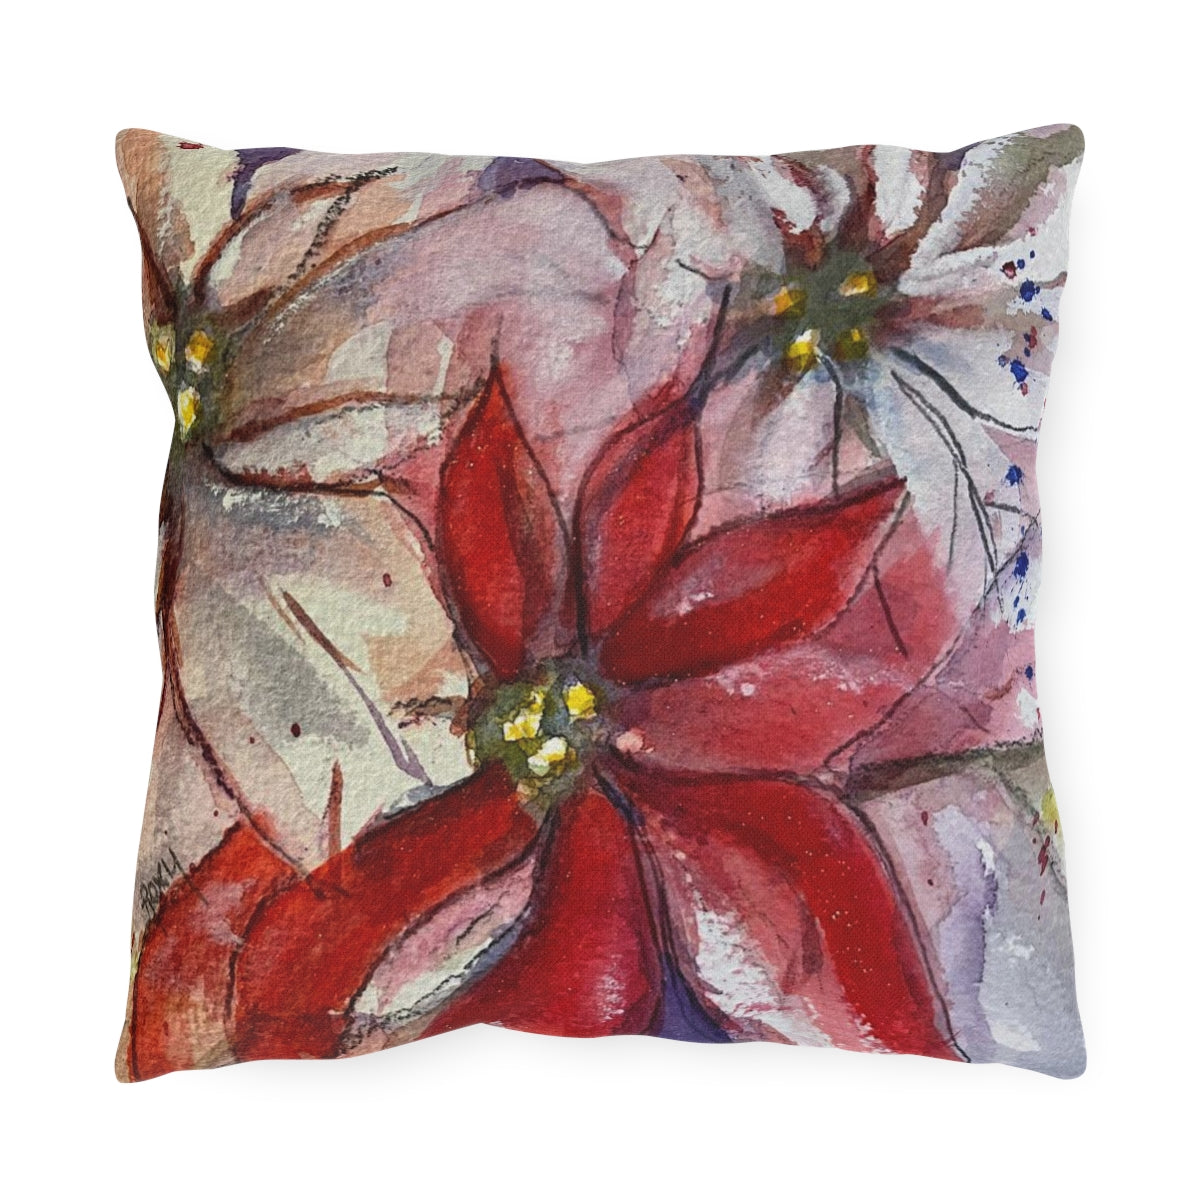 Poinsettias Outdoor Pillows